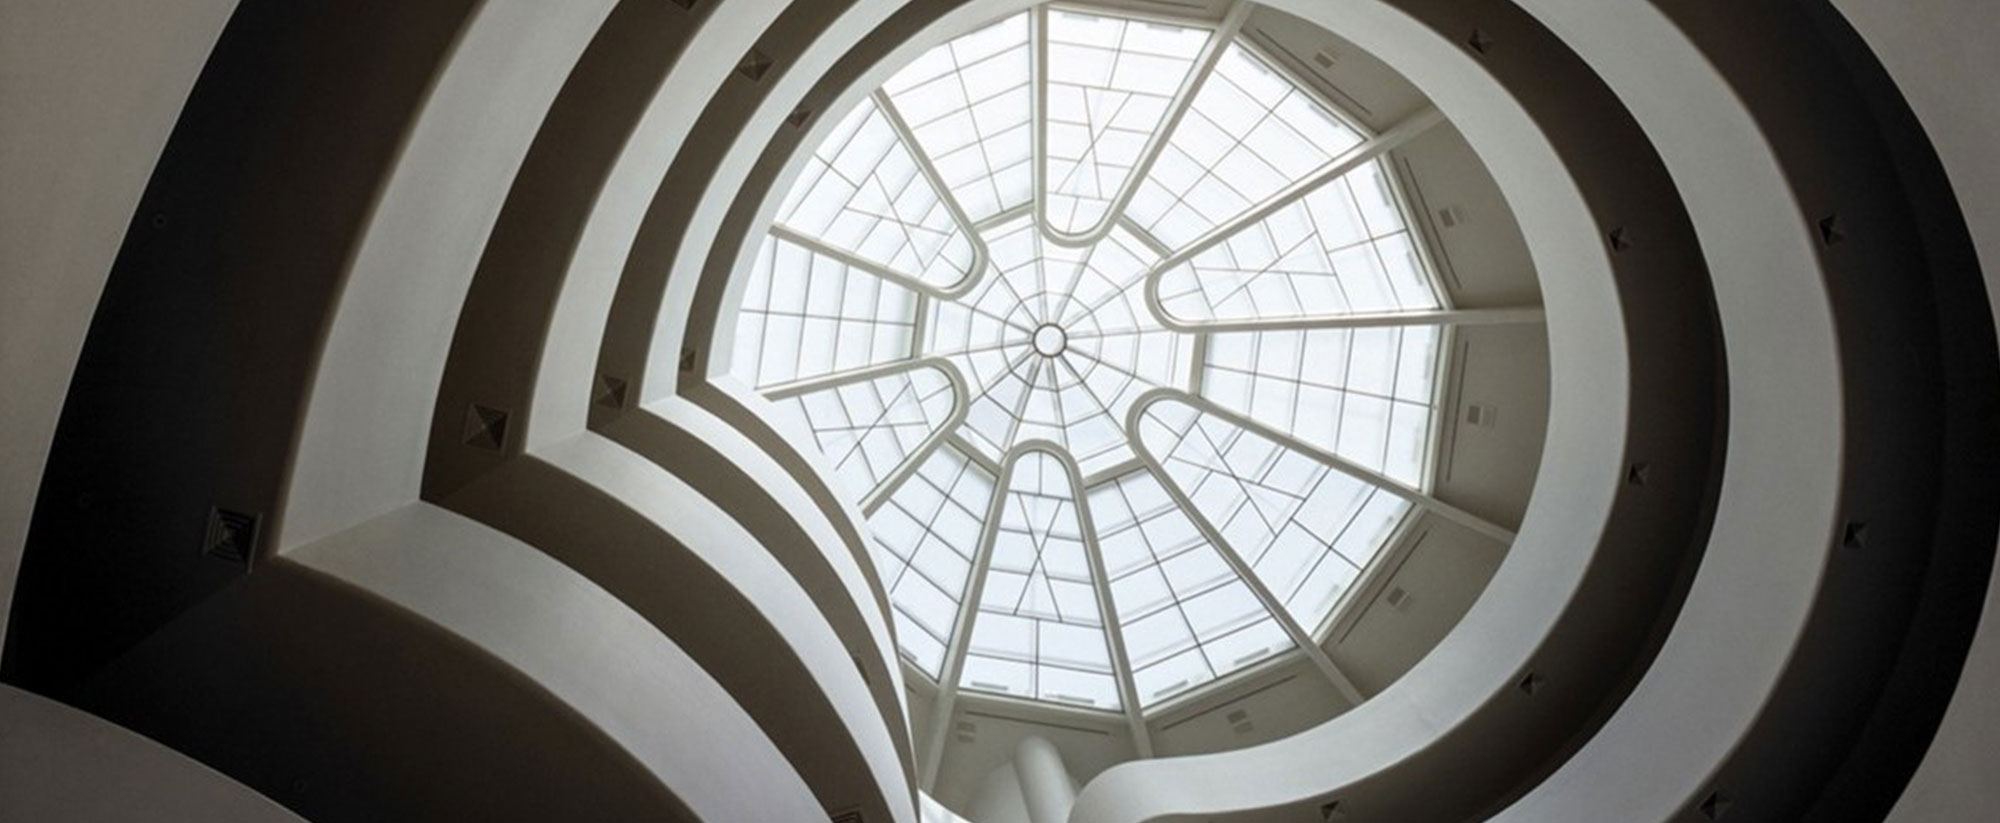 Guggenheim Museum, view of rotunda and skylight from ground floor © Solomon R.